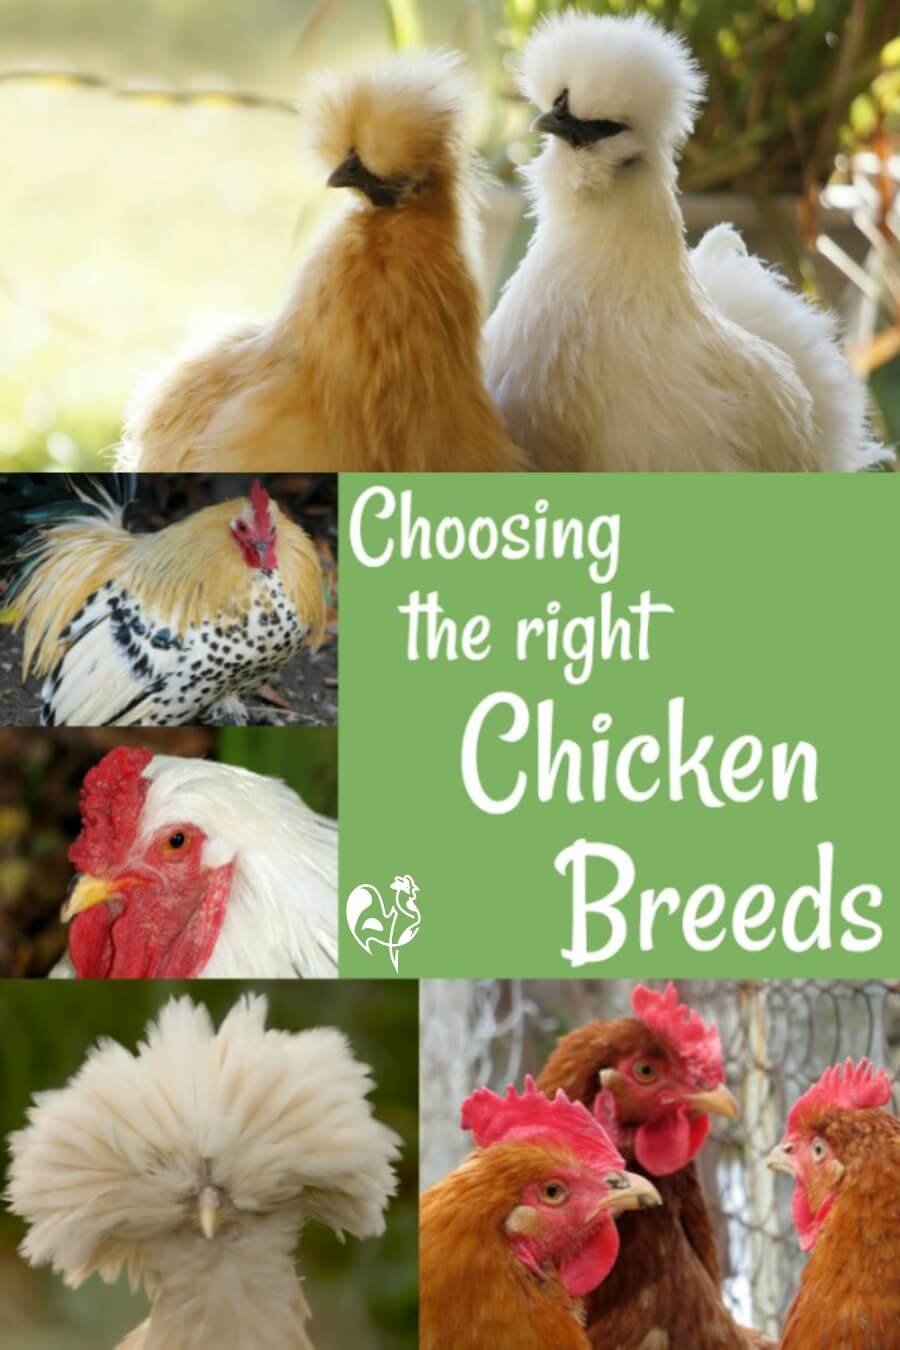 Best Chicken Breeds for Beginners